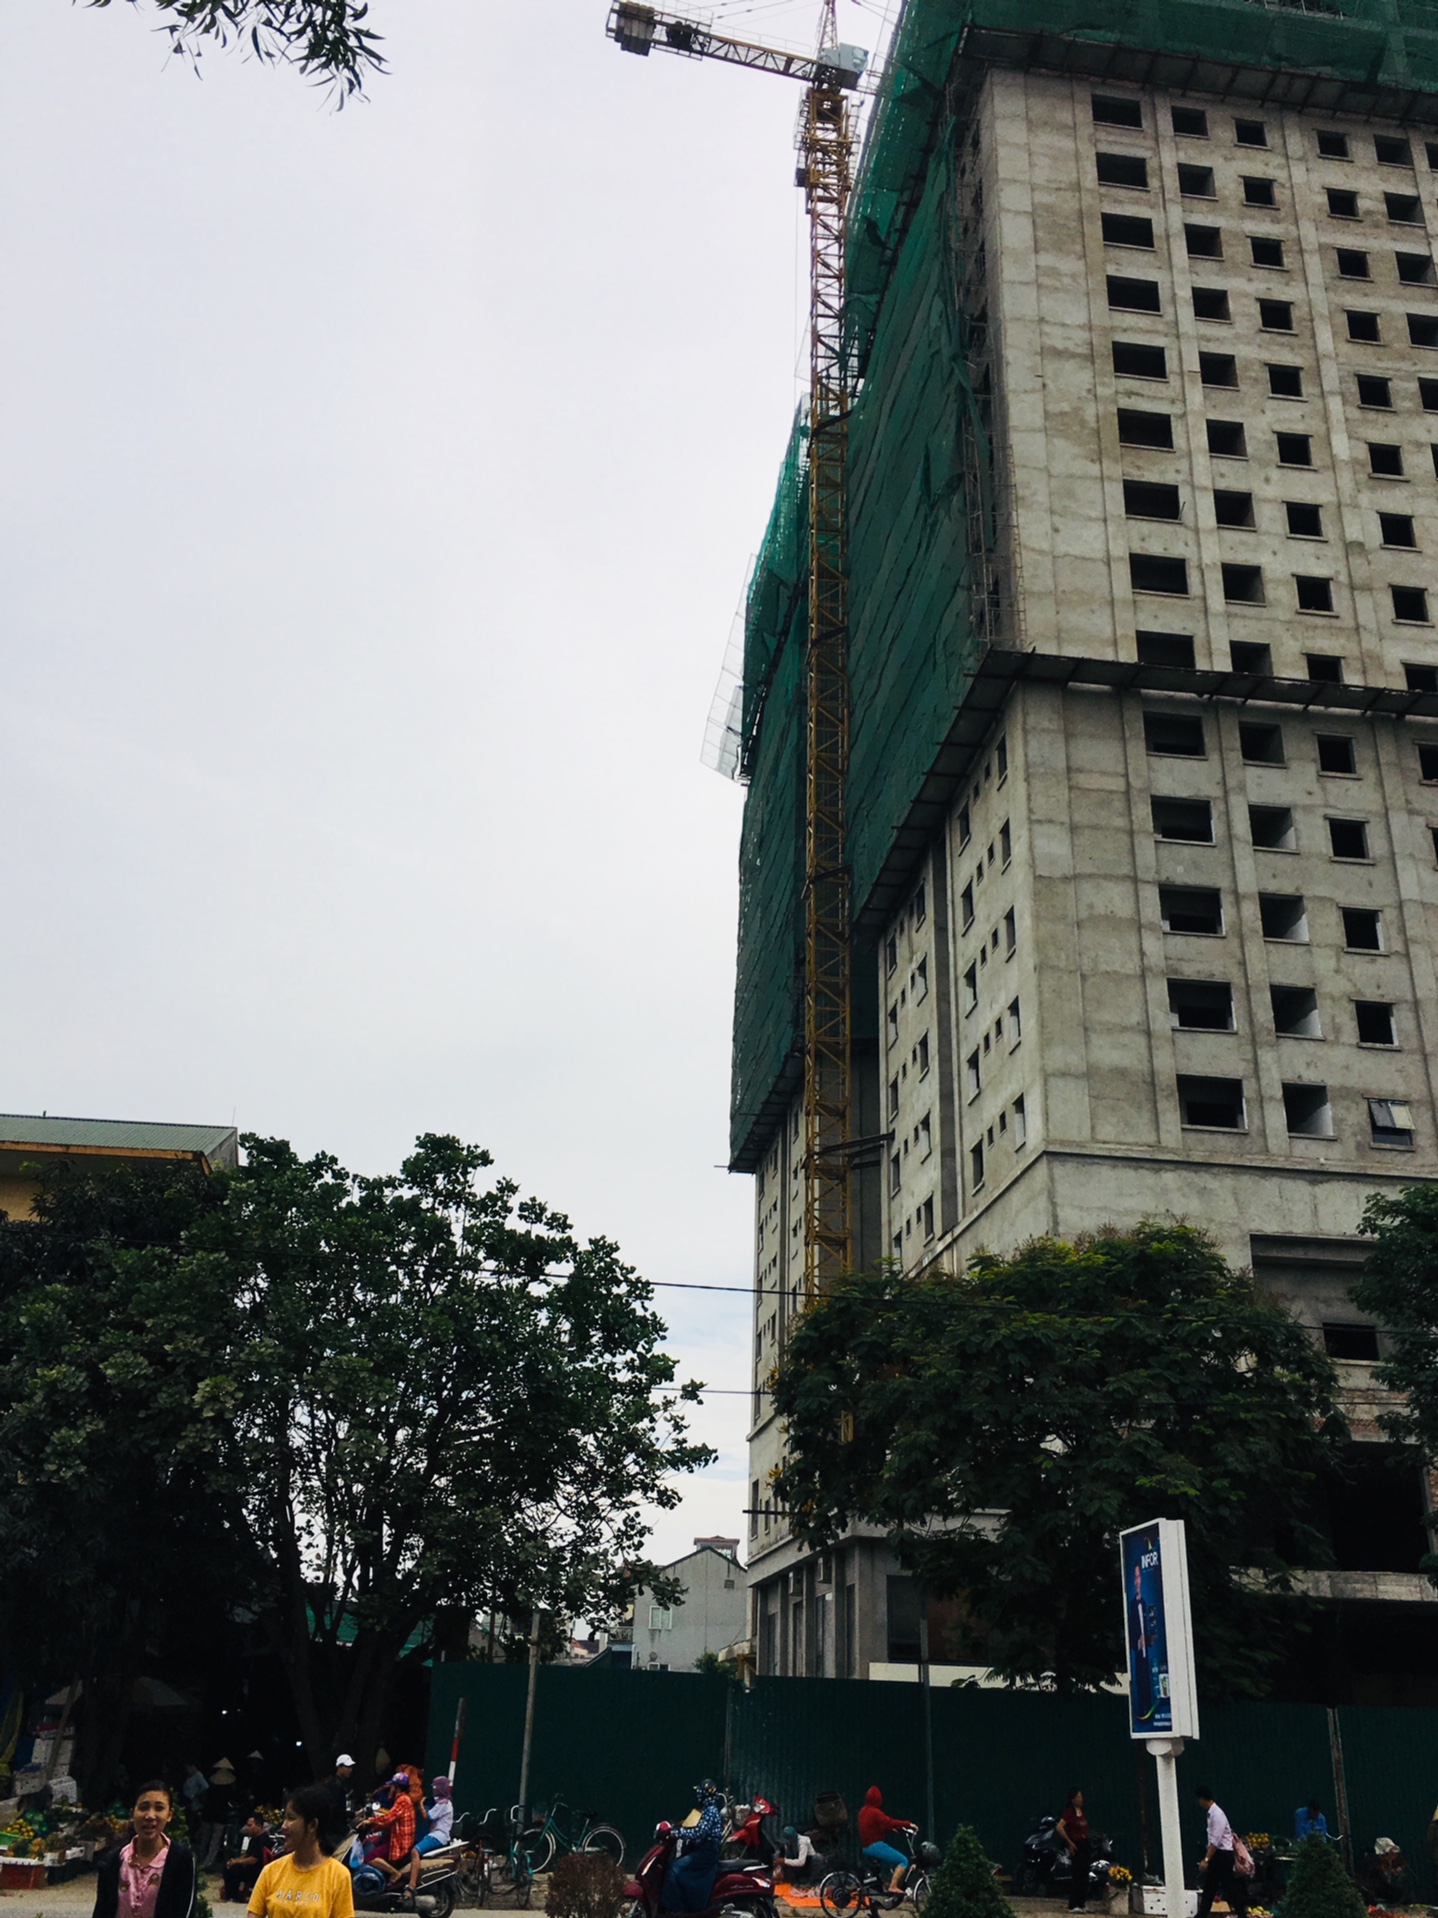 Dự án Tổ hợp nhà ở và Trung tâm Thương mại trên đường Nguyễn Du, phường Bến Thủy, TP Vinhp/vi phạm trật tự tư đô thị vẫn ngang nhiên xây dựng giữa thanh thiên bạch nhật, bất chấp các văn bản yêu cầu dừng xây dựng của chính quyền địa phương.